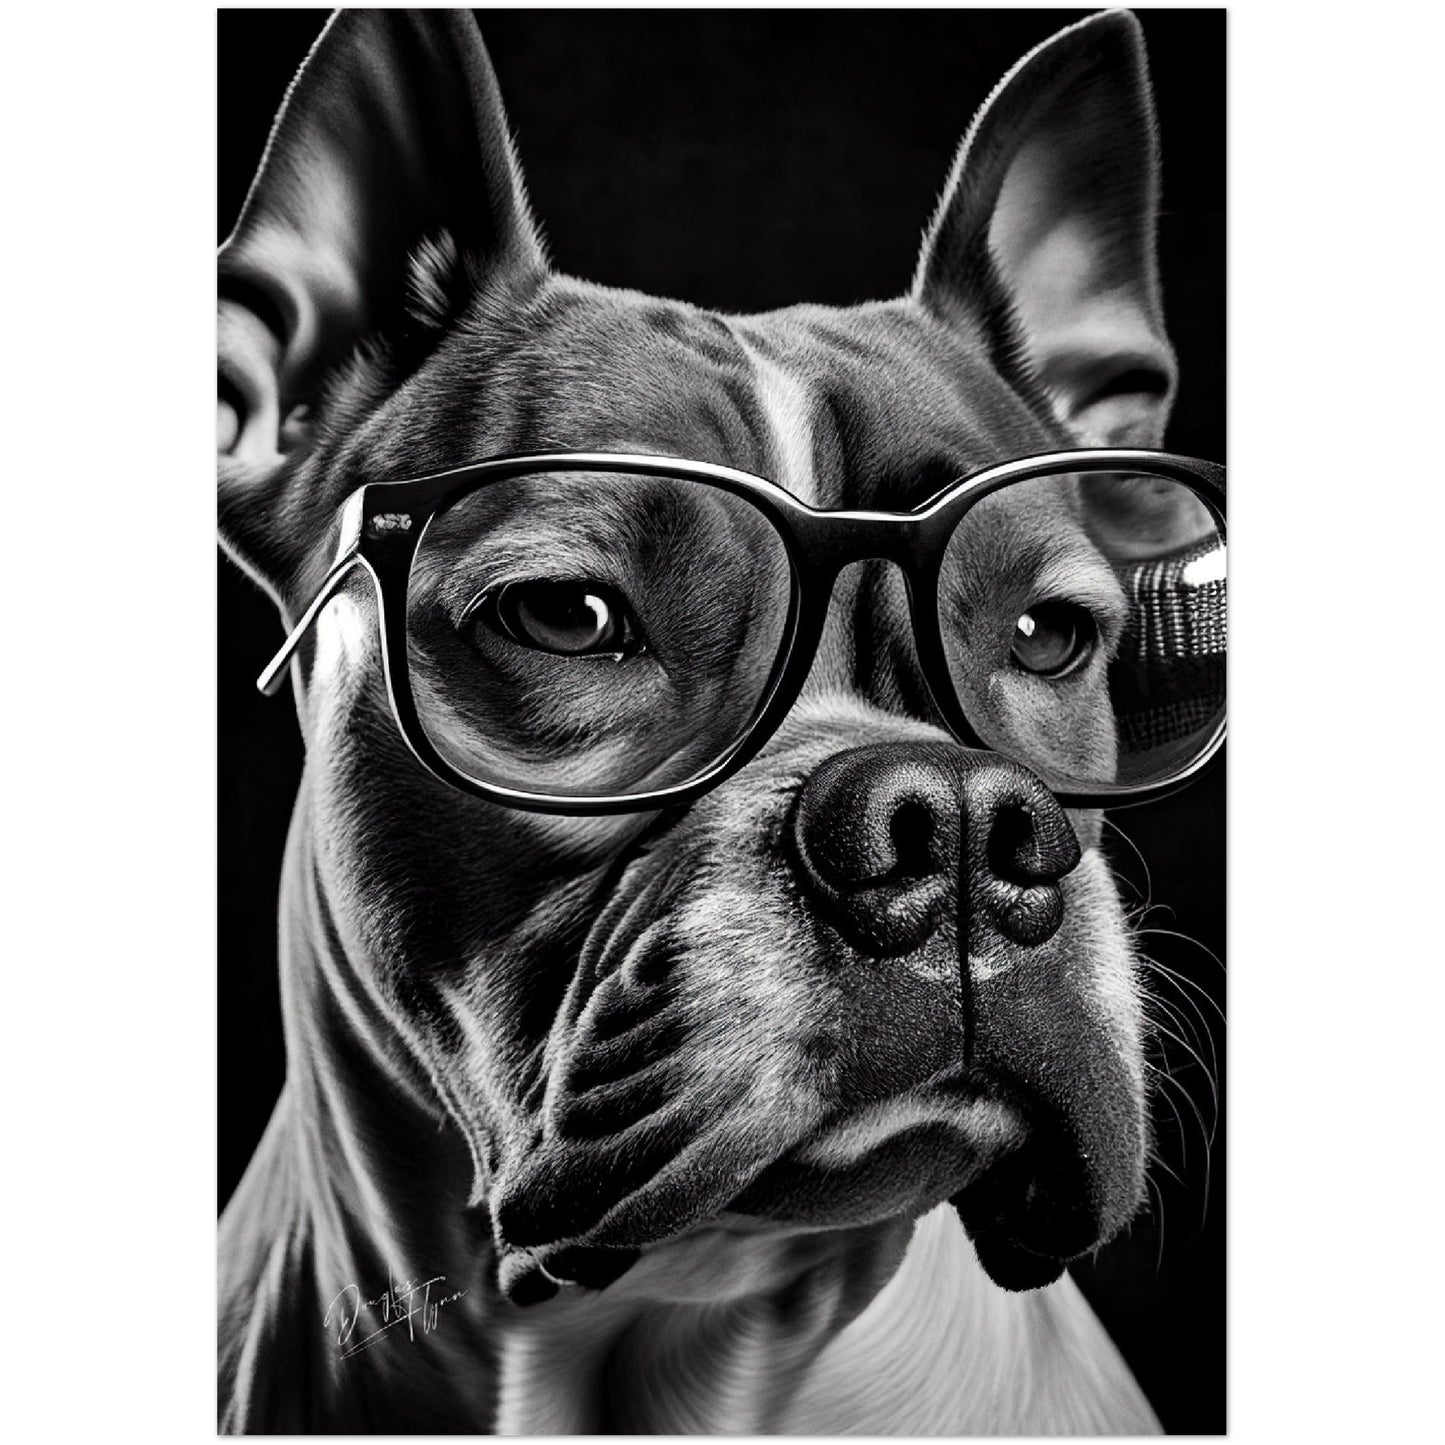 »Stylish Canine« retro poster